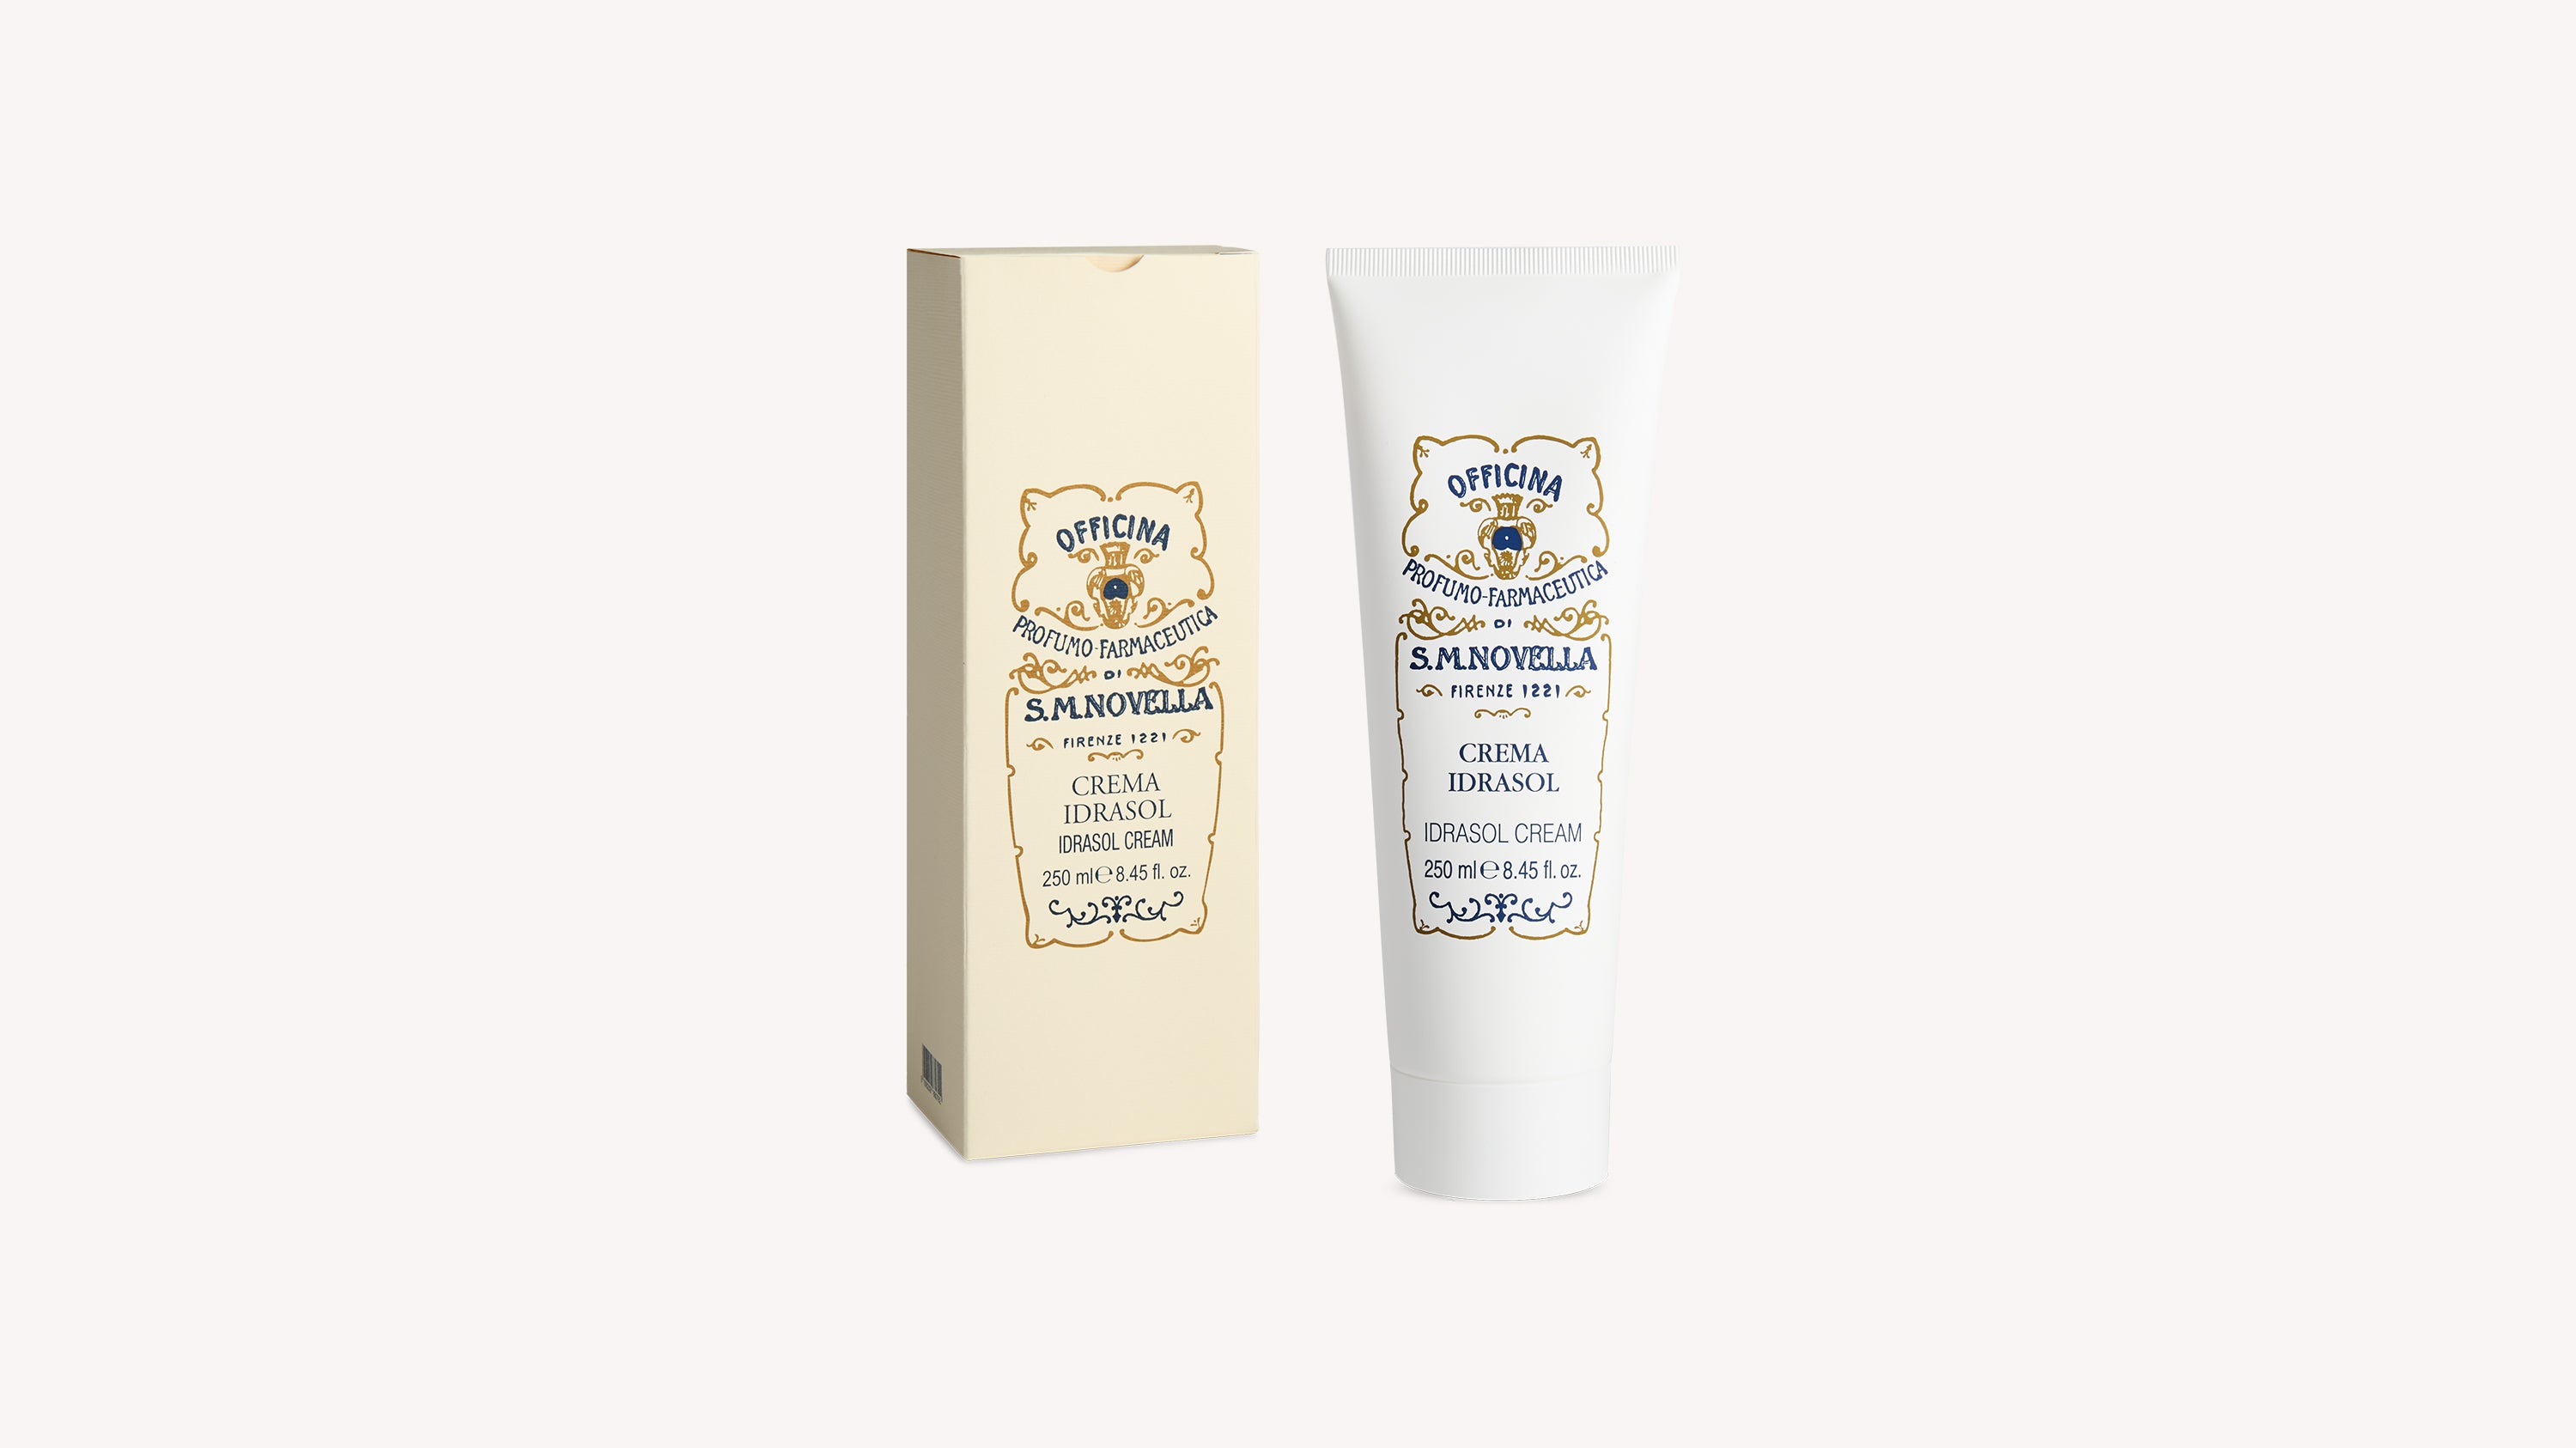 Idrasol Cream Body Care officina-smn-usa-ca.myshopify.com Officina Profumo Farmaceutica di Santa Maria Novella - US